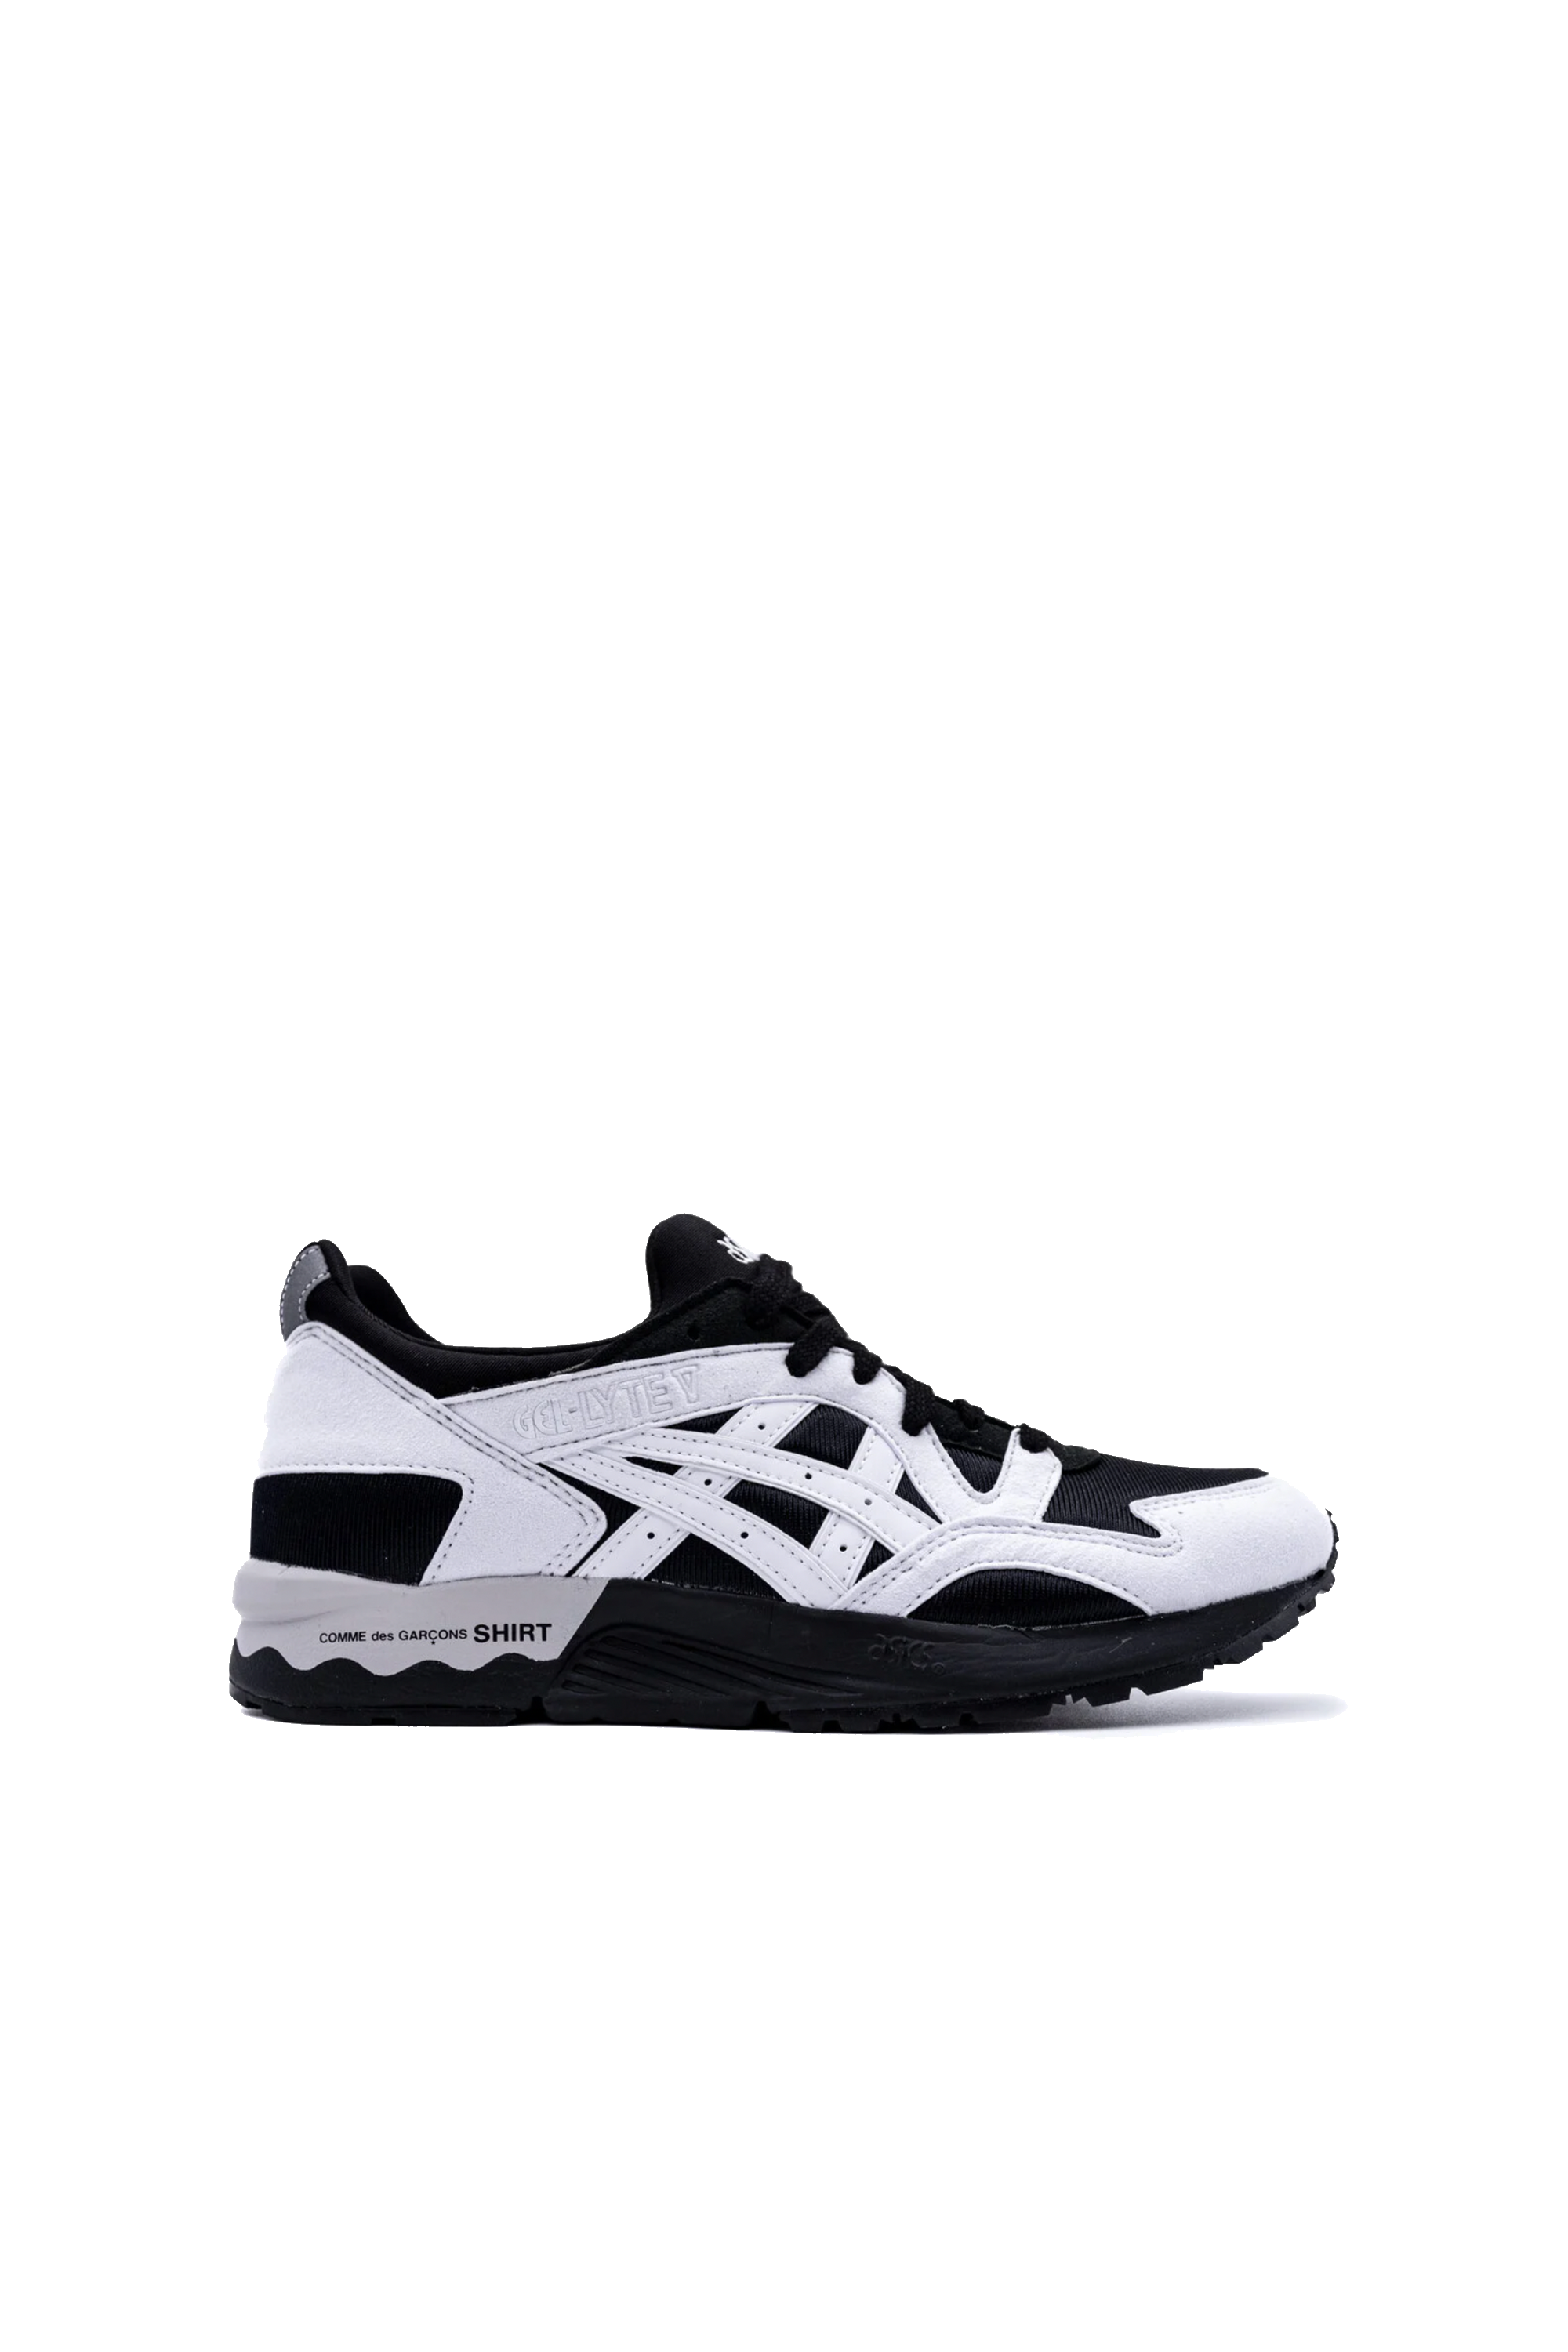 CdG SHIRT V Sneakers Black/White